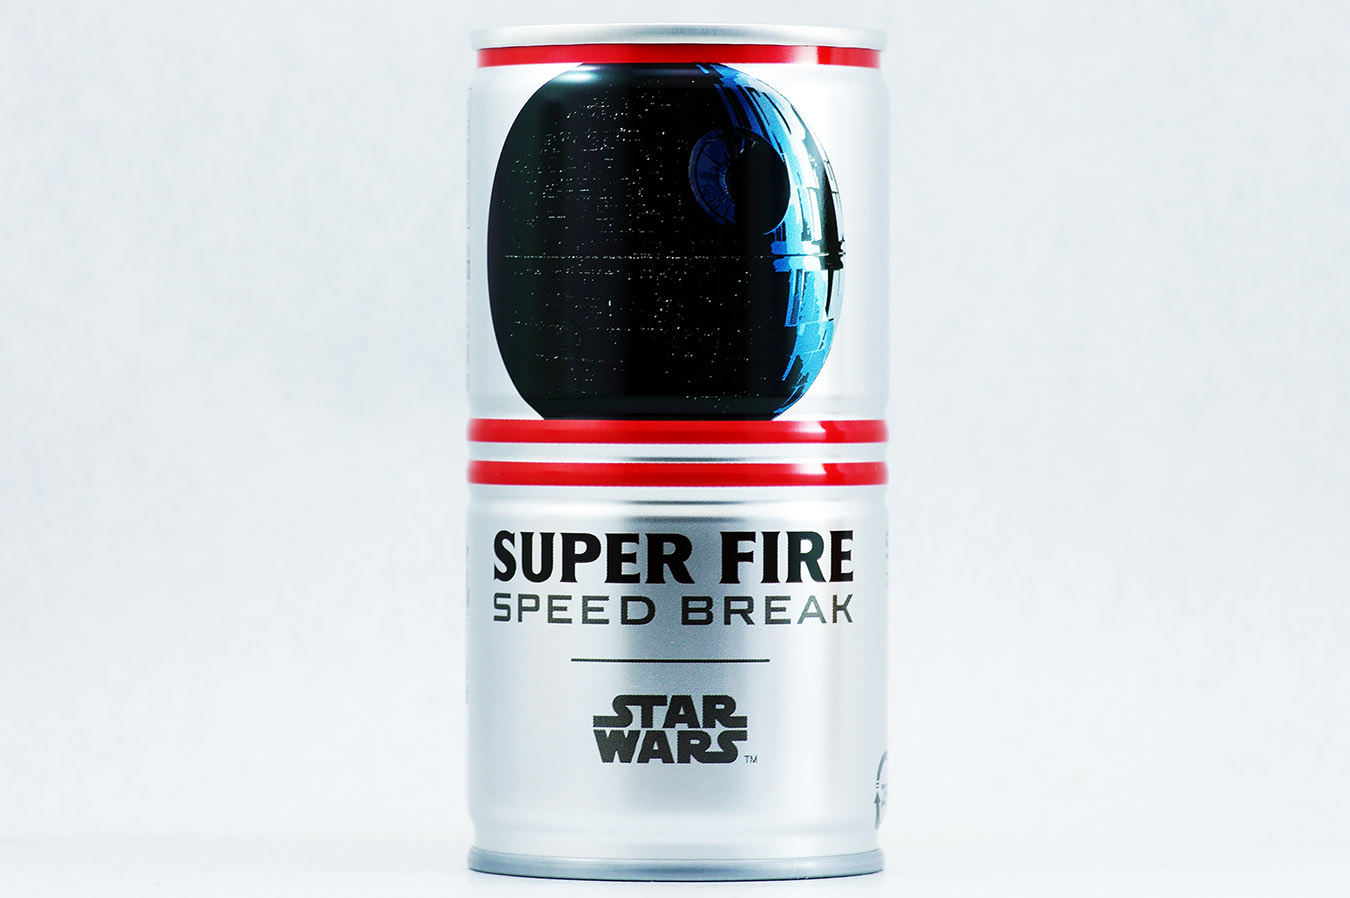 FIRE 挽きたて微糖 「STAR WARS」限定デザイン デス・スター 2016年1月